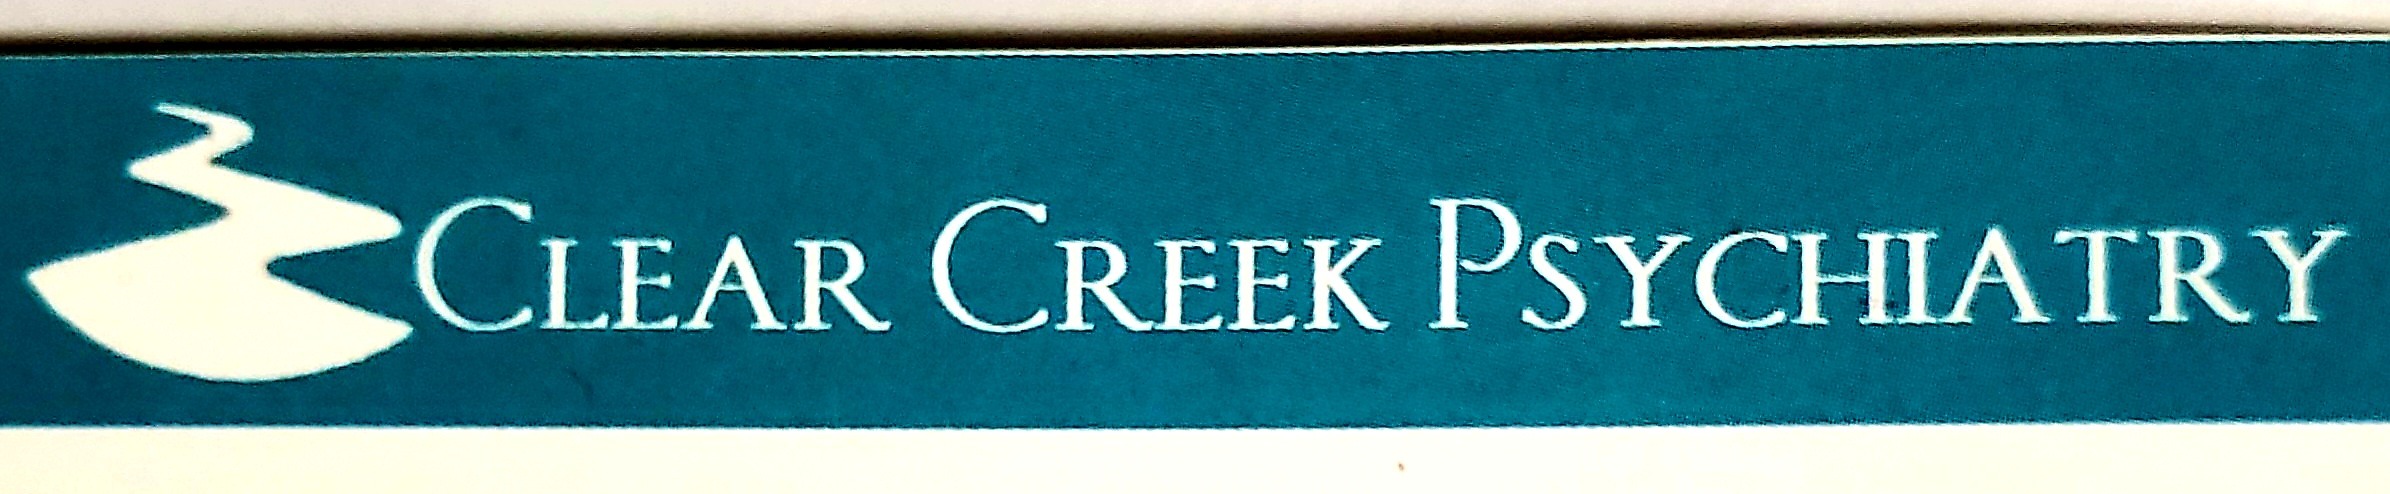 Clear Creek Psychiatry logo